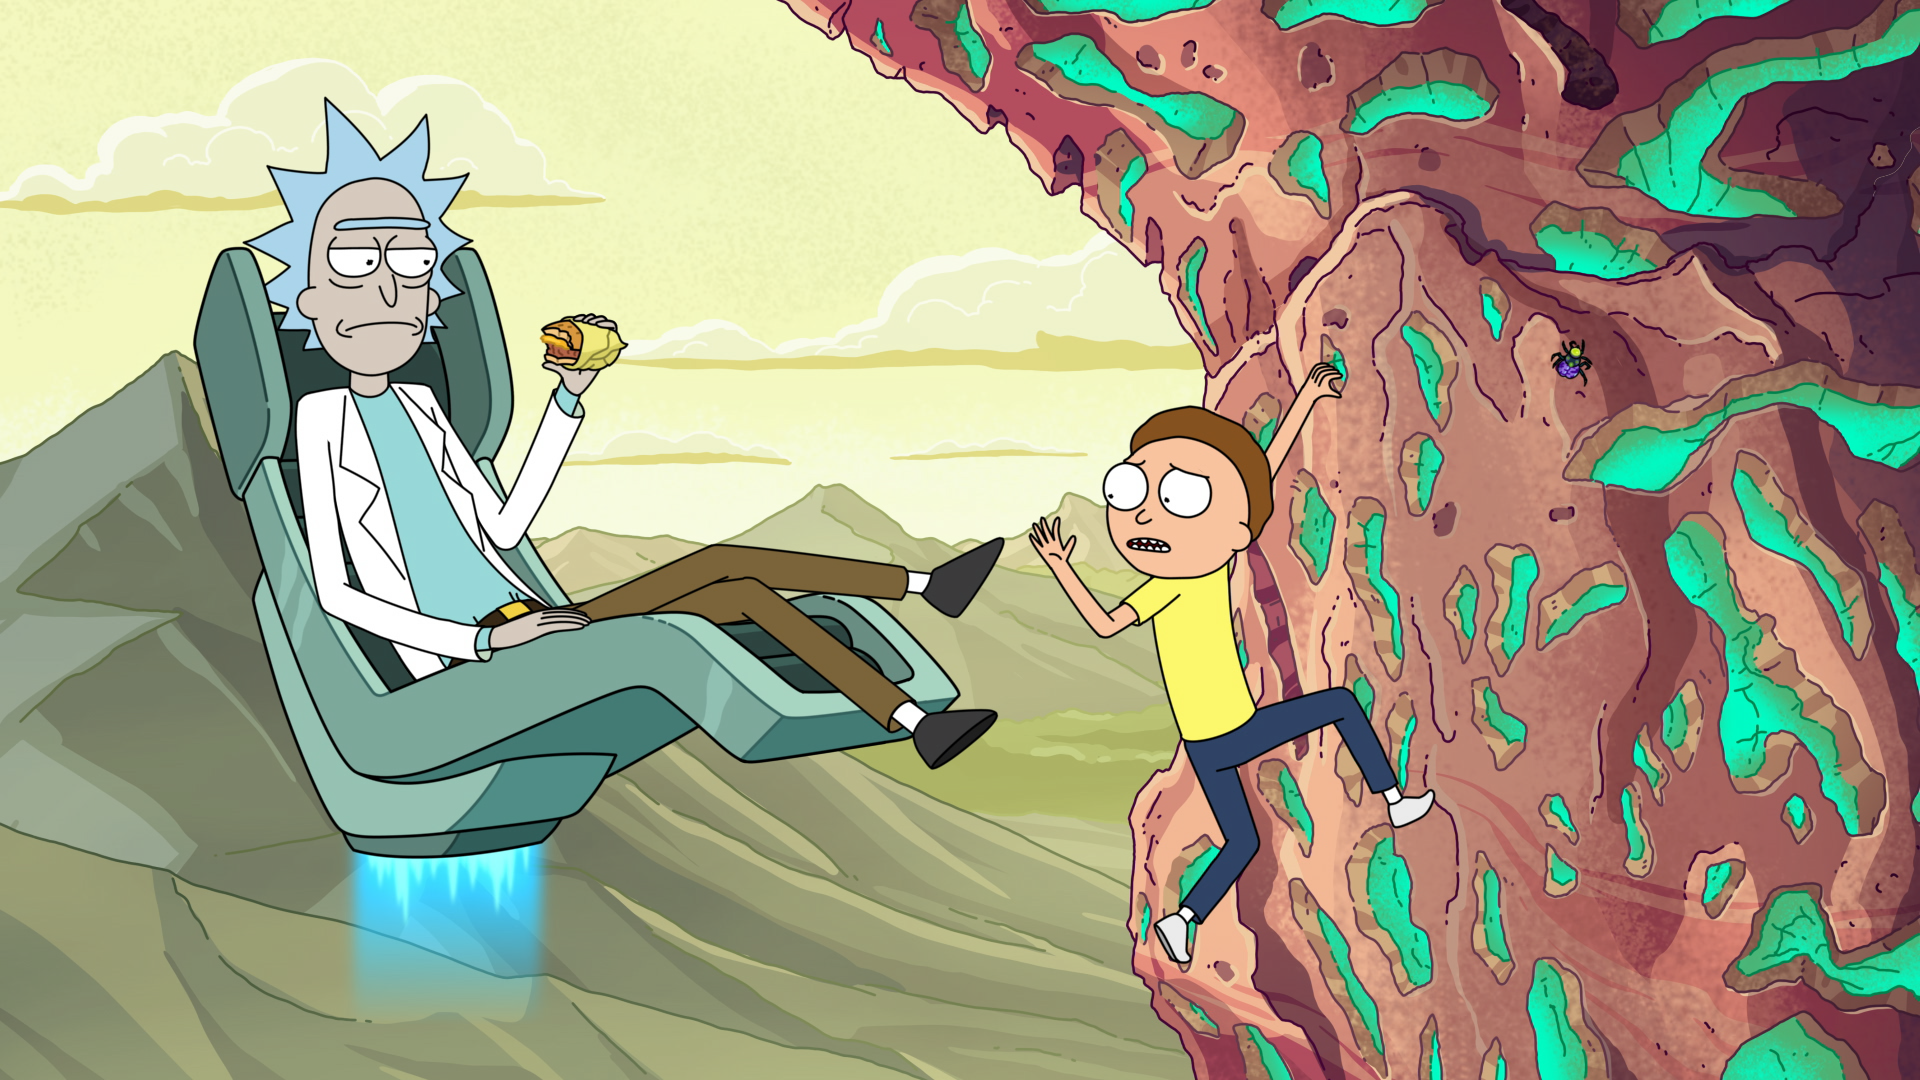 Rick and Morty - Season 4 Part 2, May 3 on Cartoon Network